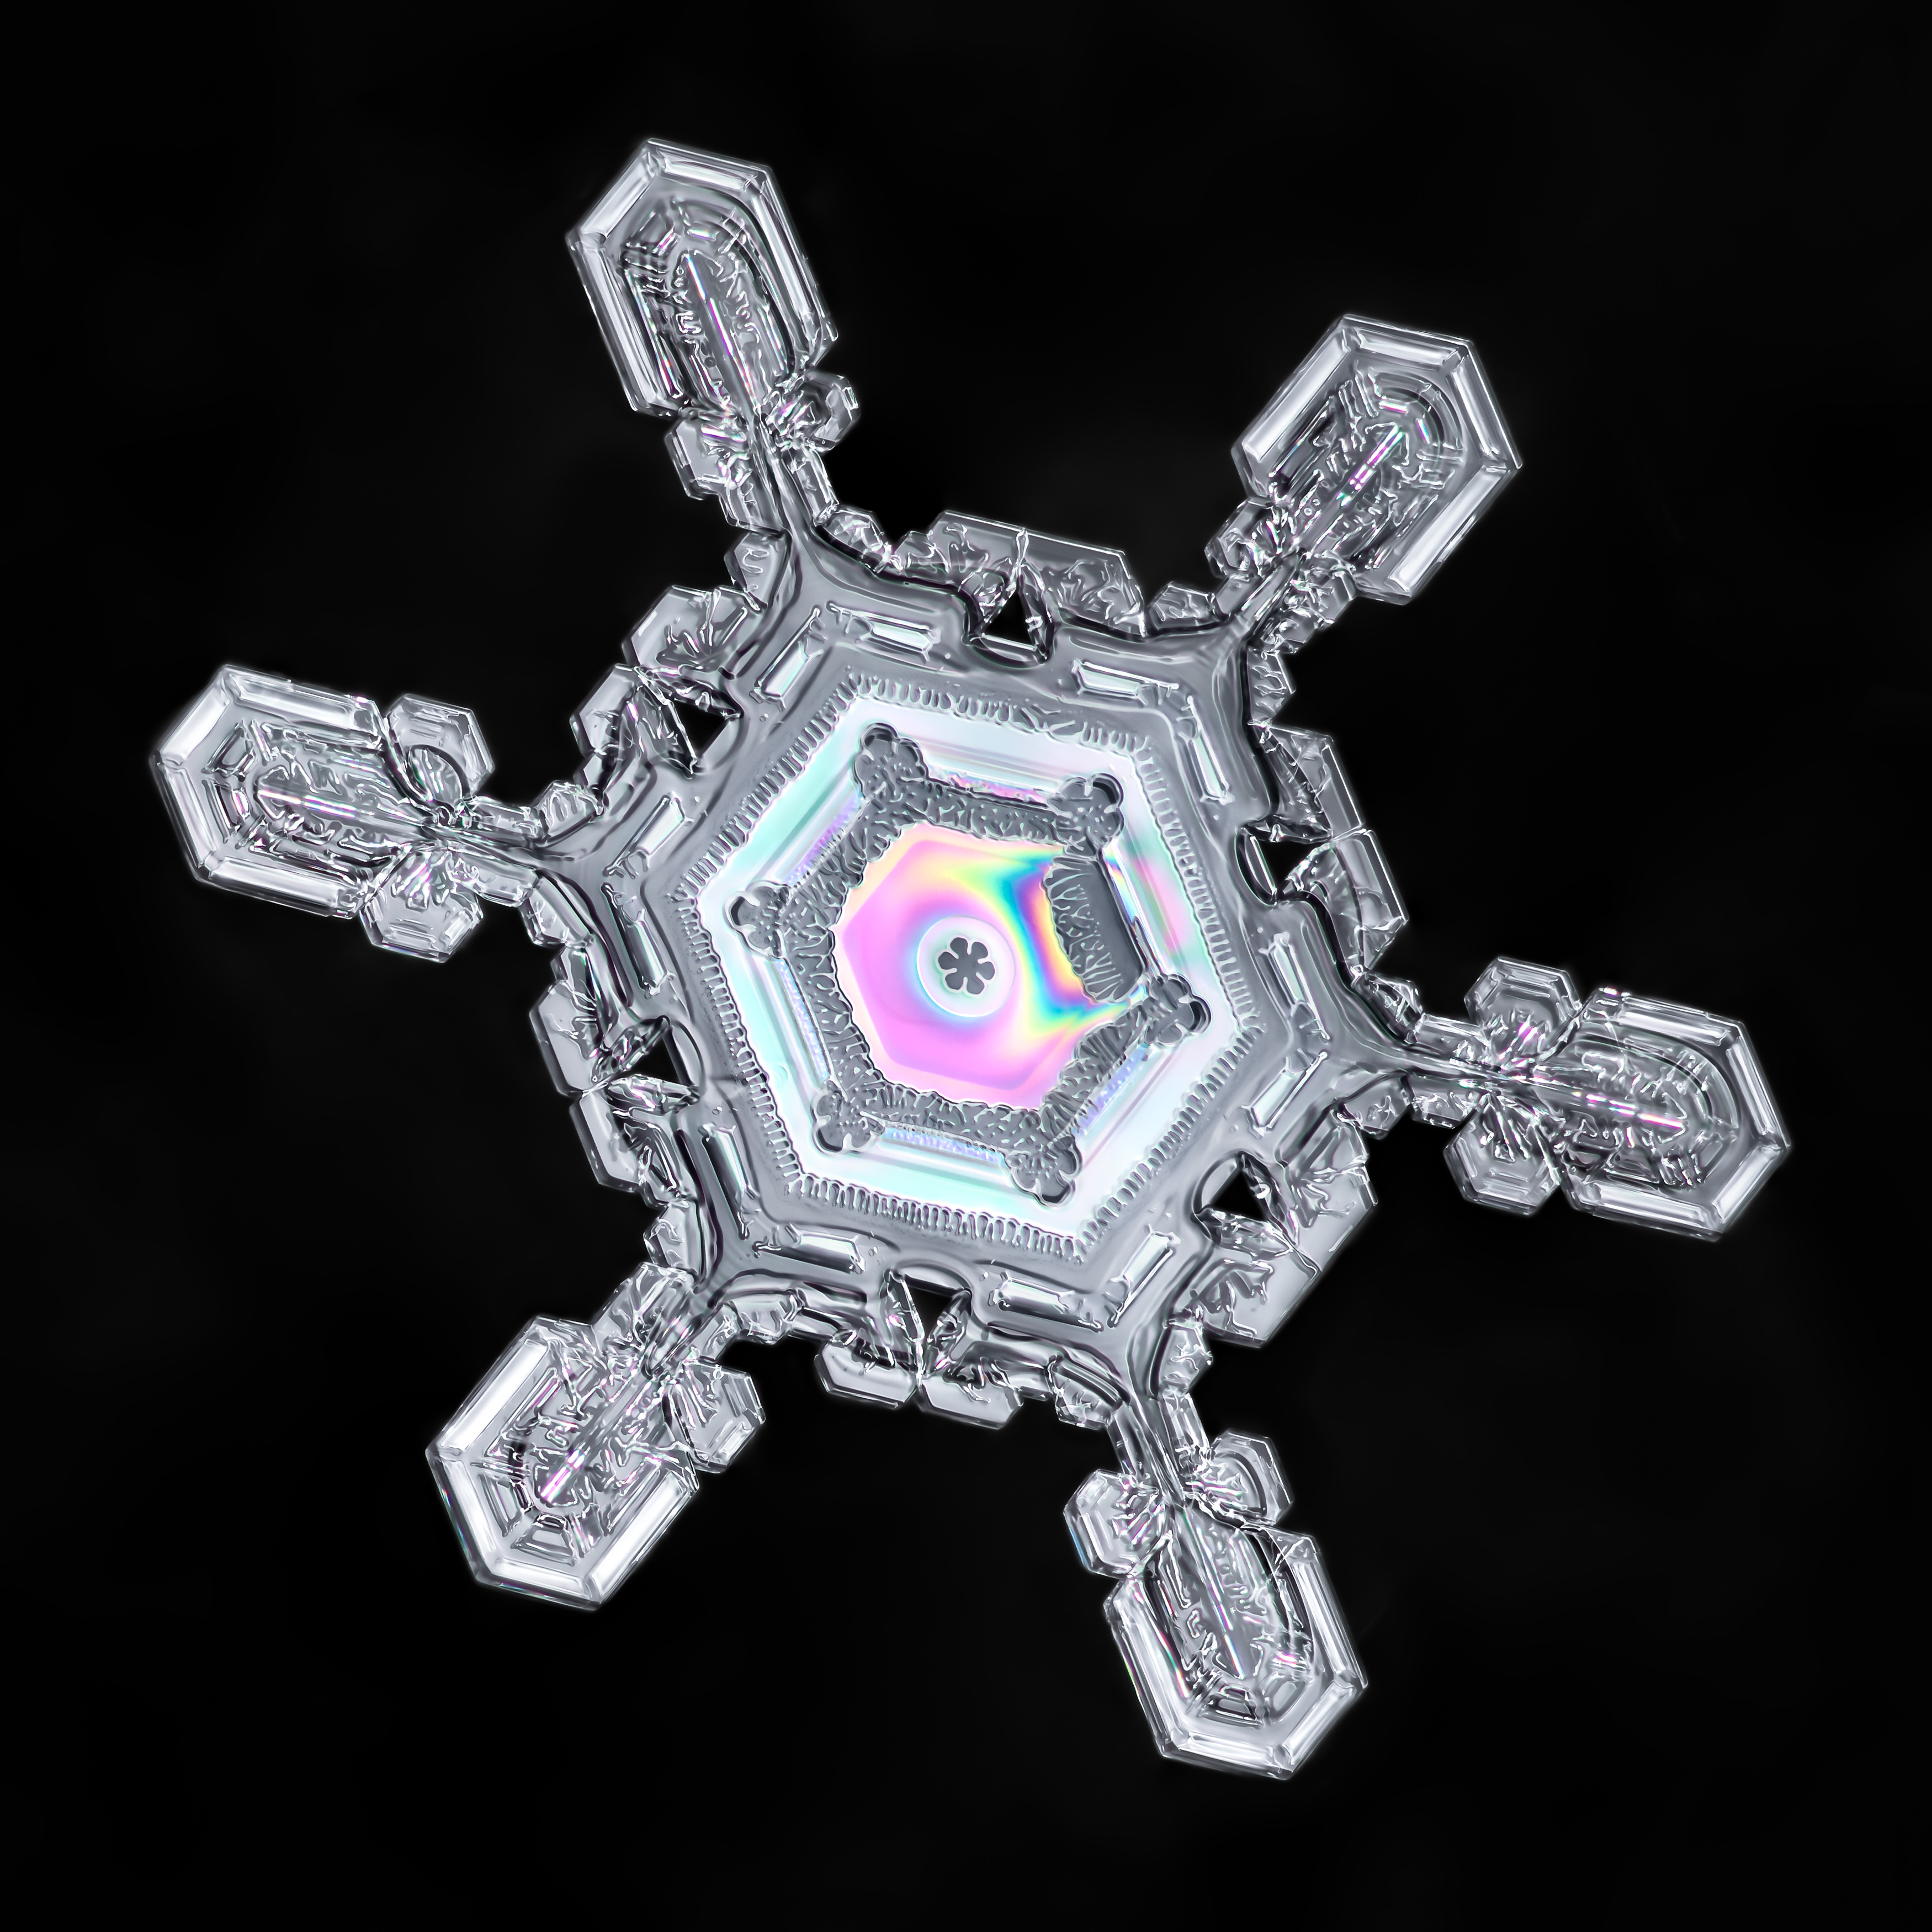 Snowflake-a-Day No. 13